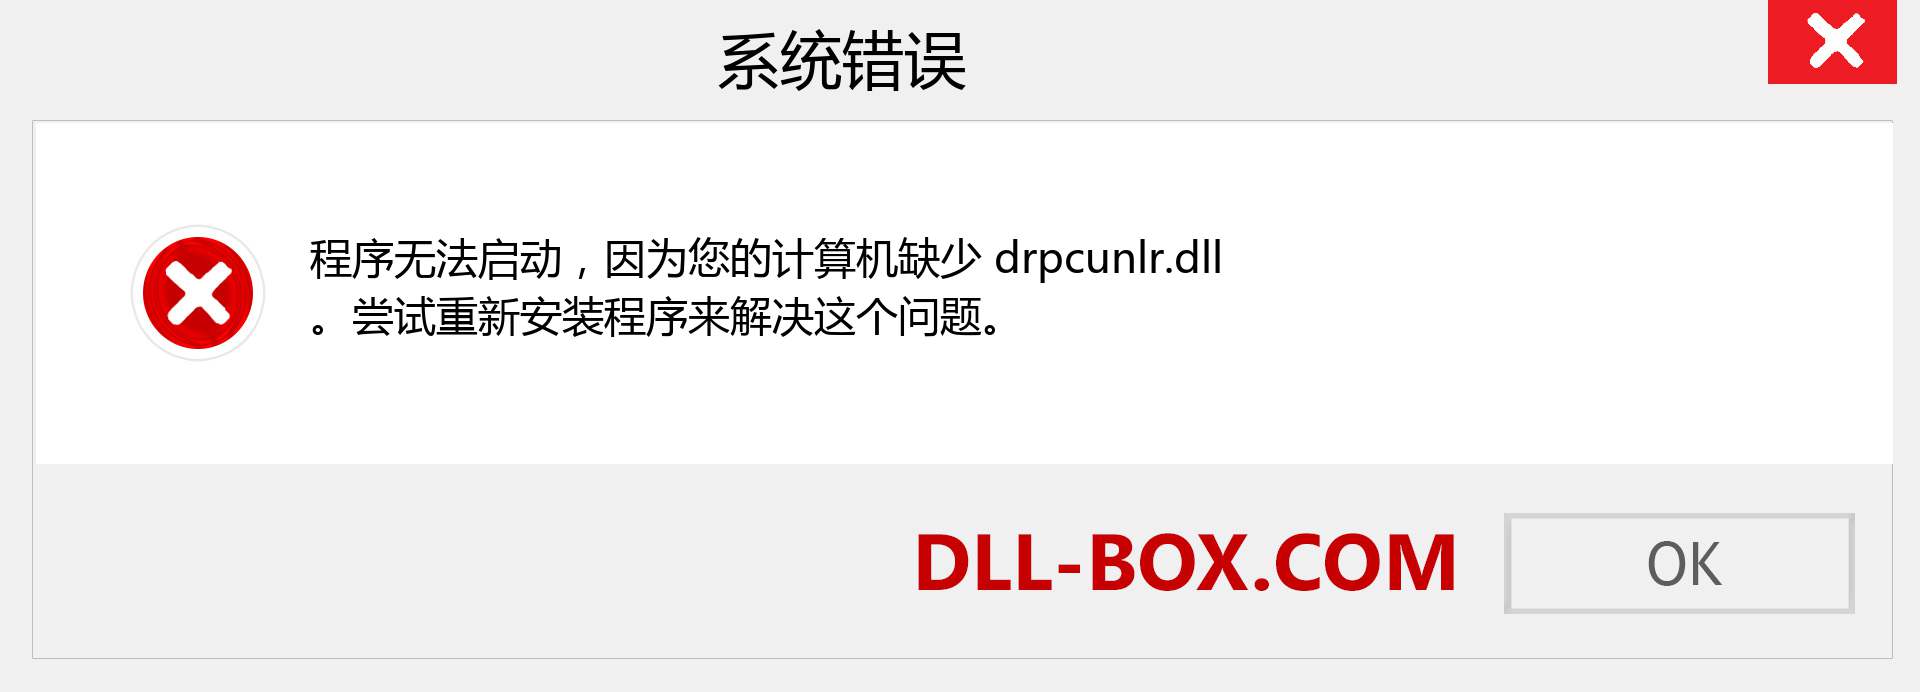 drpcunlr.dll 文件丢失？。 适用于 Windows 7、8、10 的下载 - 修复 Windows、照片、图像上的 drpcunlr dll 丢失错误